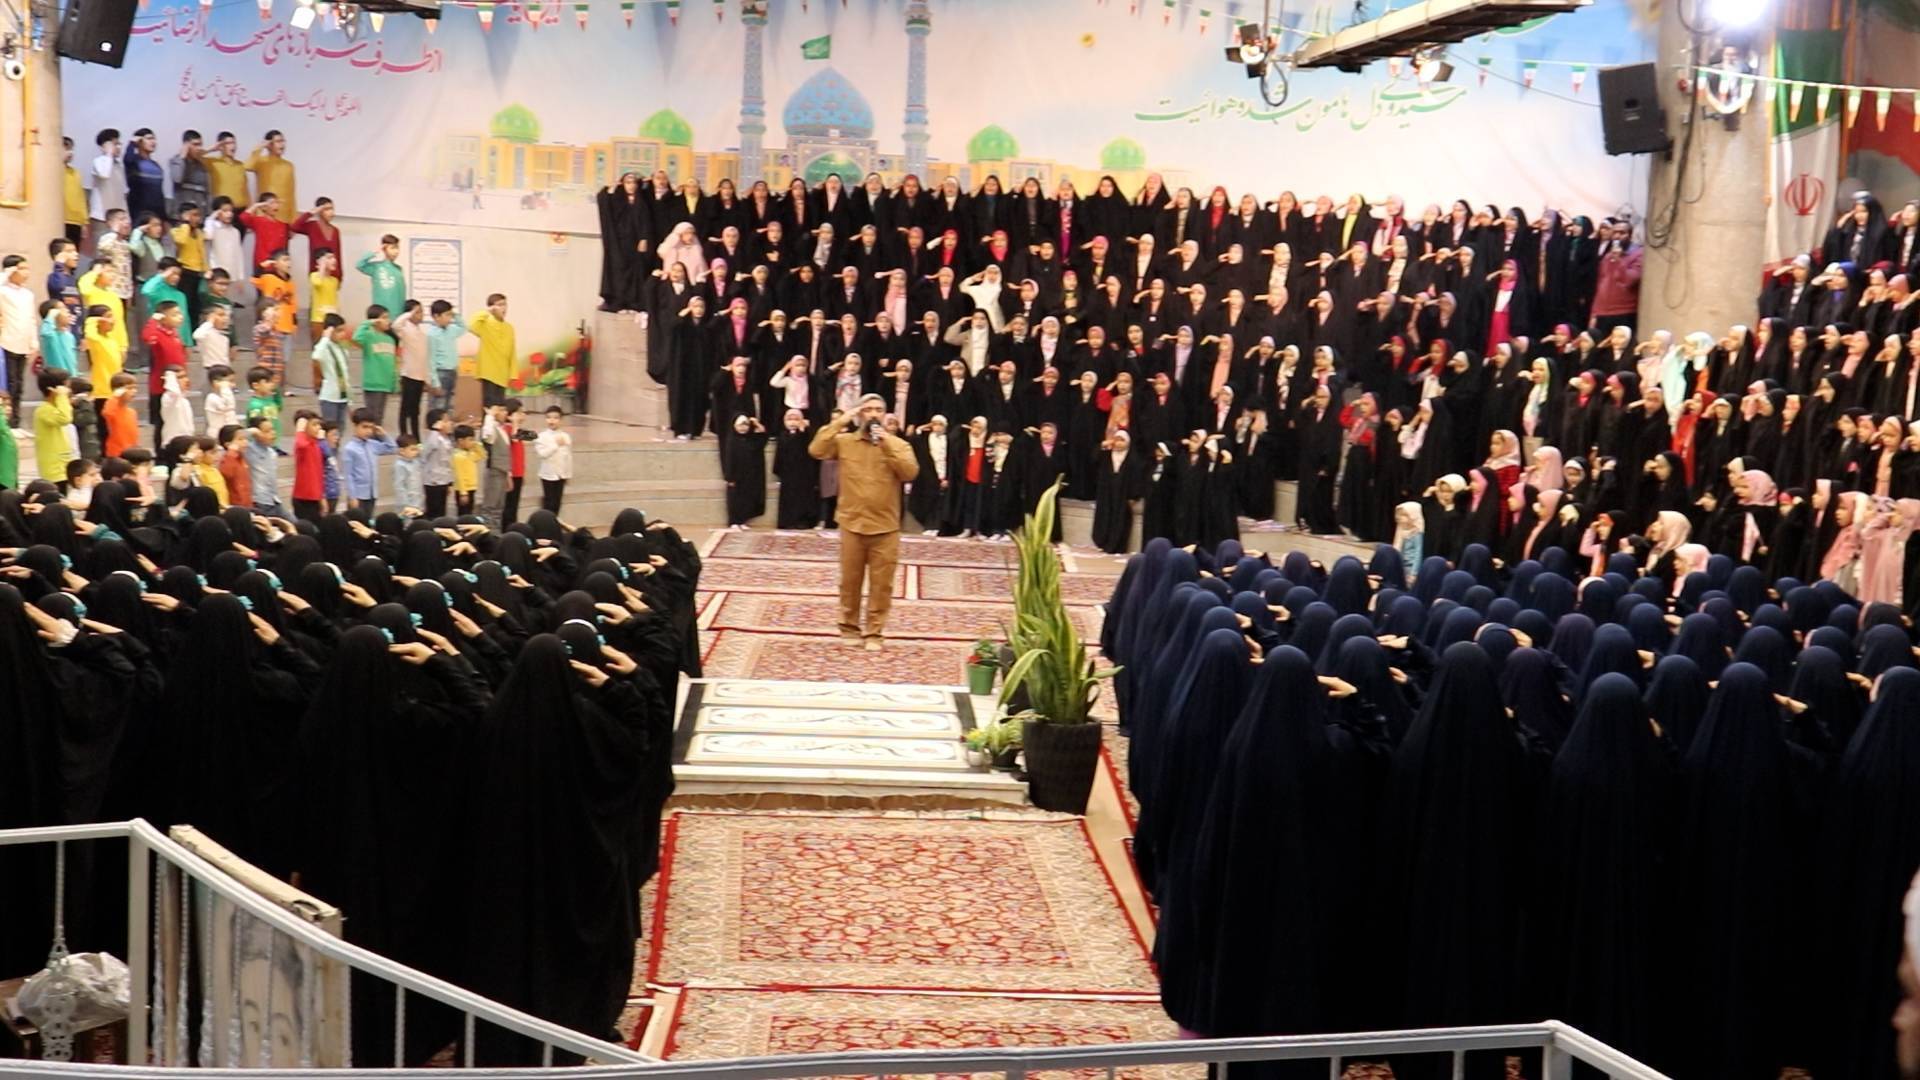 پایان تمرین سرود قلب عالم امروز در گلزار میدان شهدای مشهد